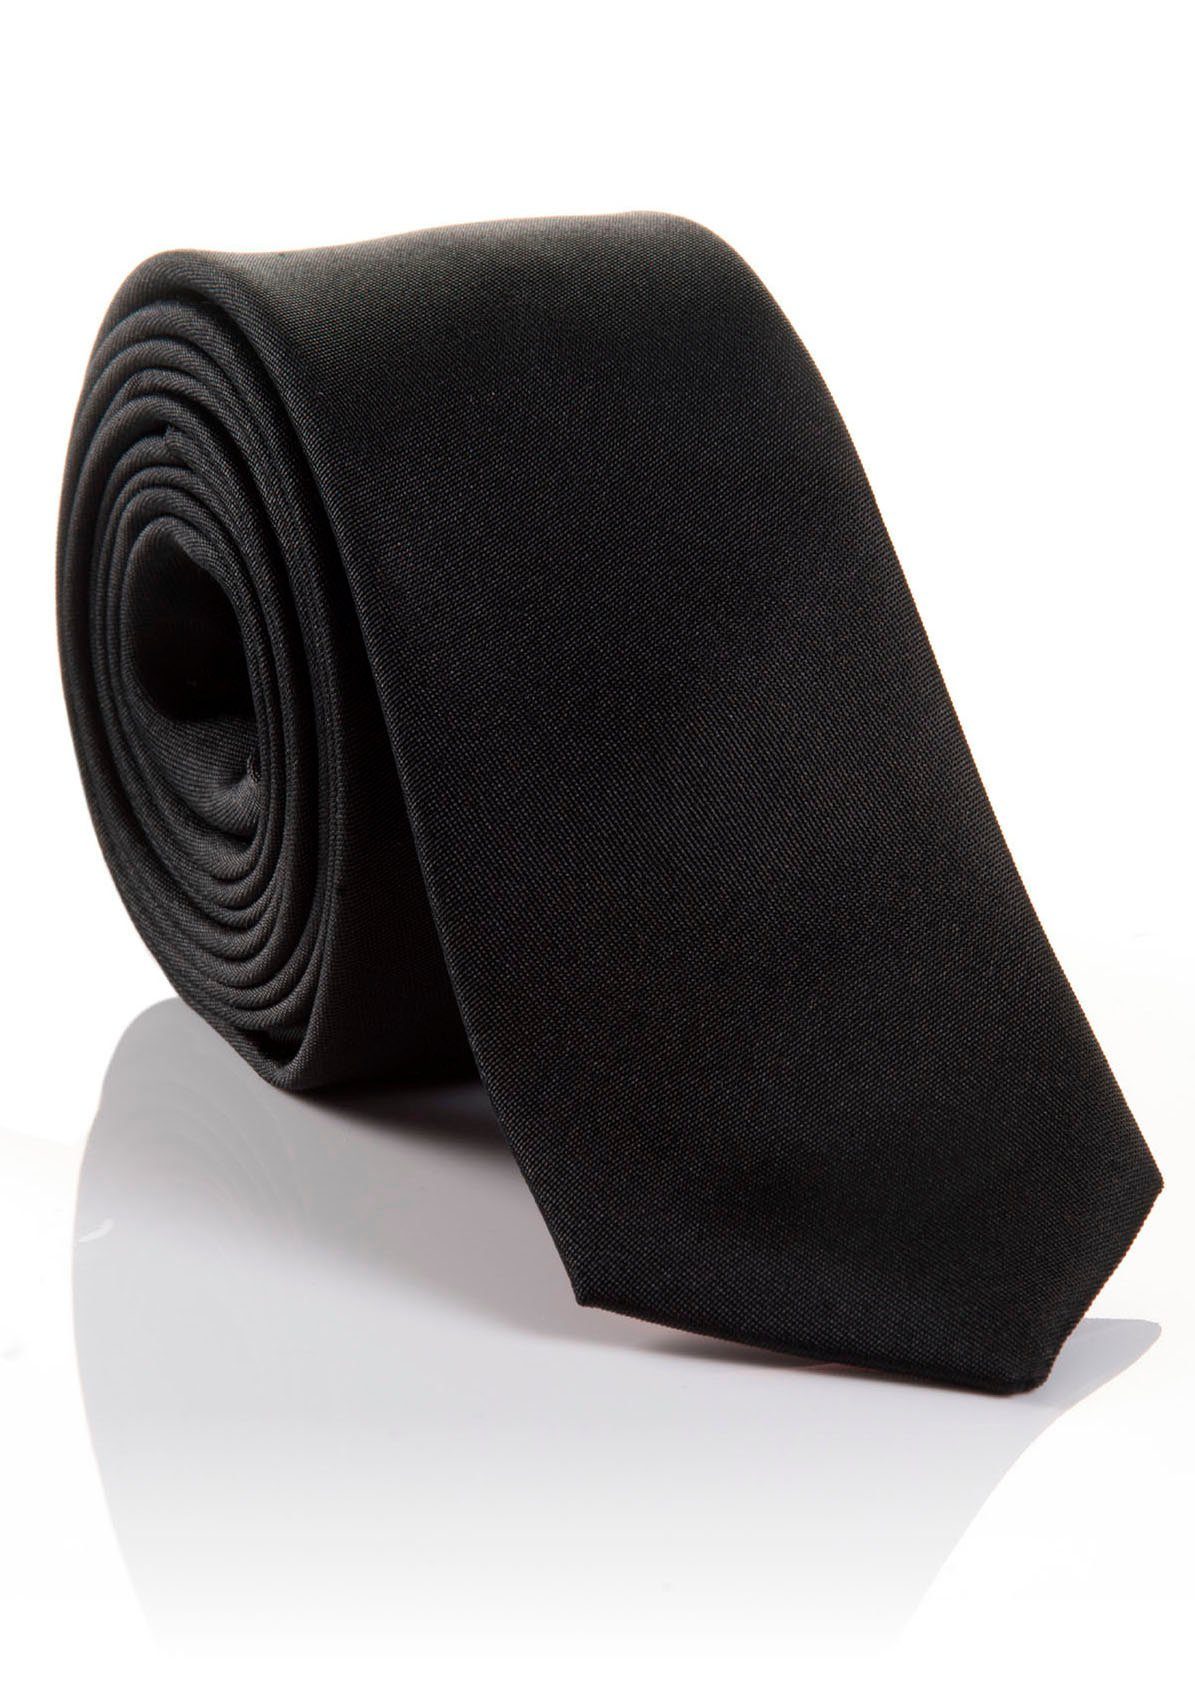 MONTI Krawatte LORENZO hohem Seidenkrawatte mit Tragekomfort verarbeitete Hochwertig